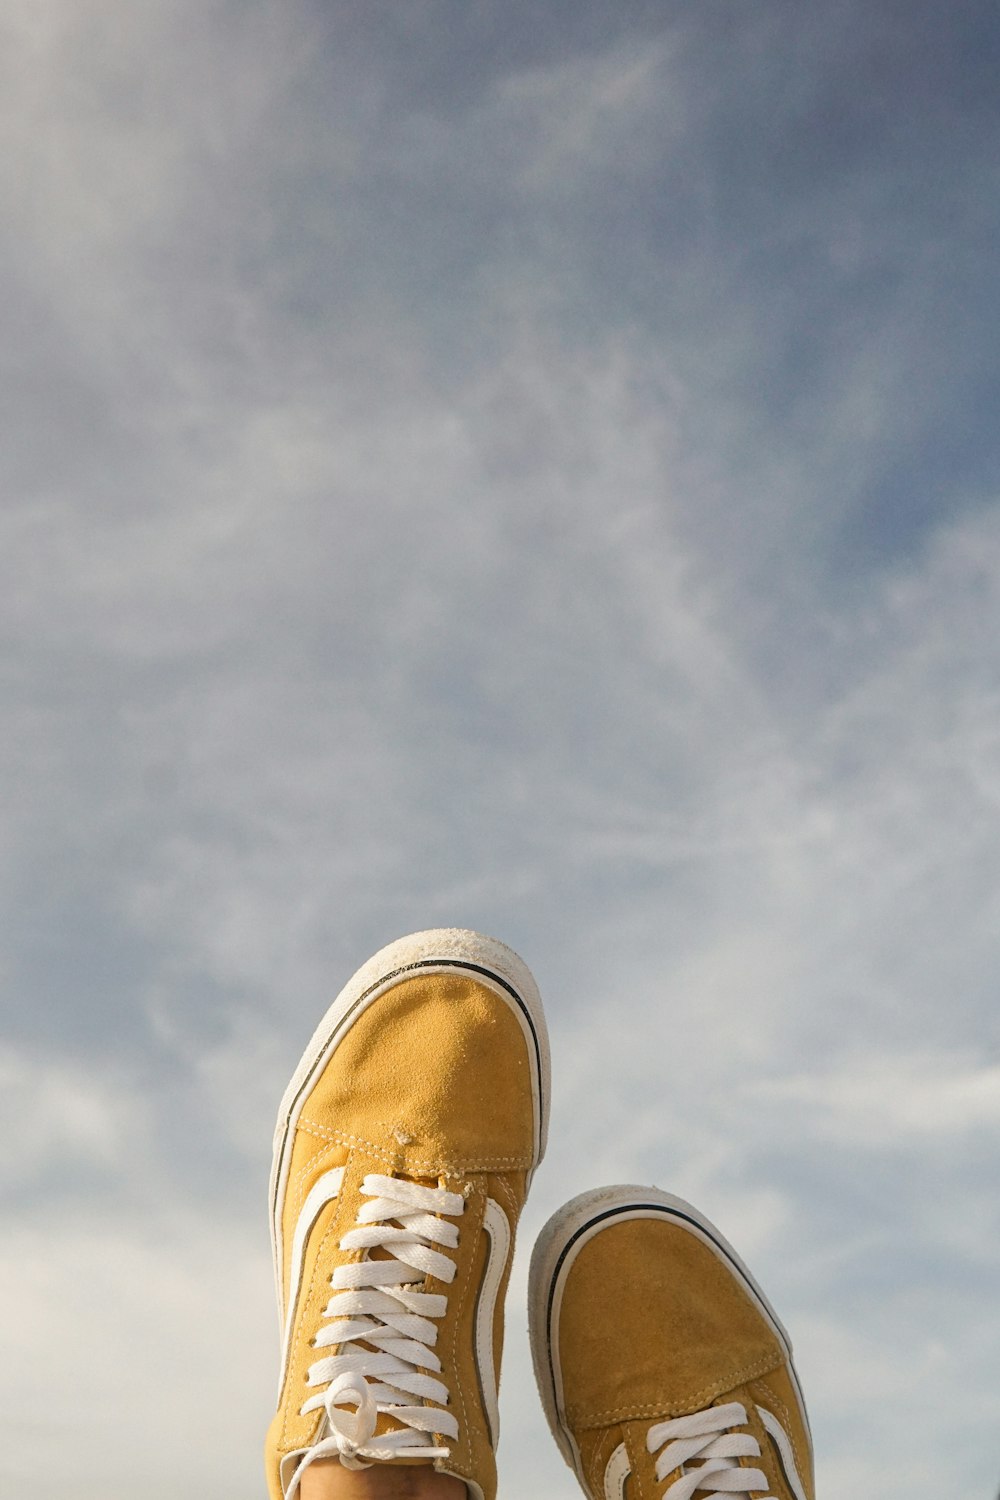 los pies de una persona con zapatos amarillos parados en una repisa